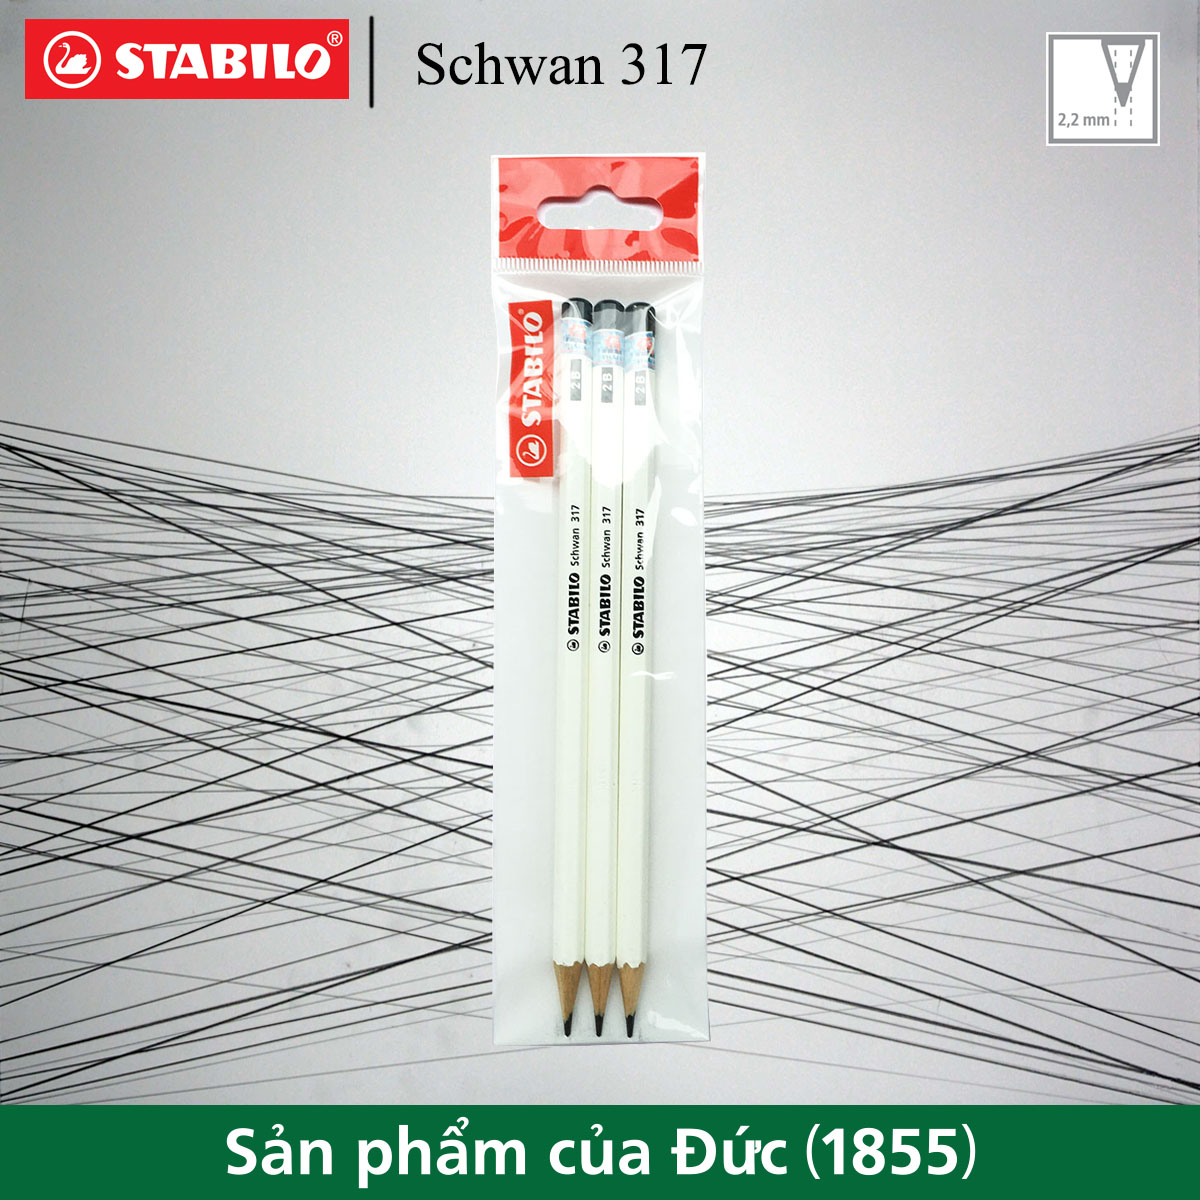 Bộ 3 bút chì gỗ STABILO Schwan 317 2B